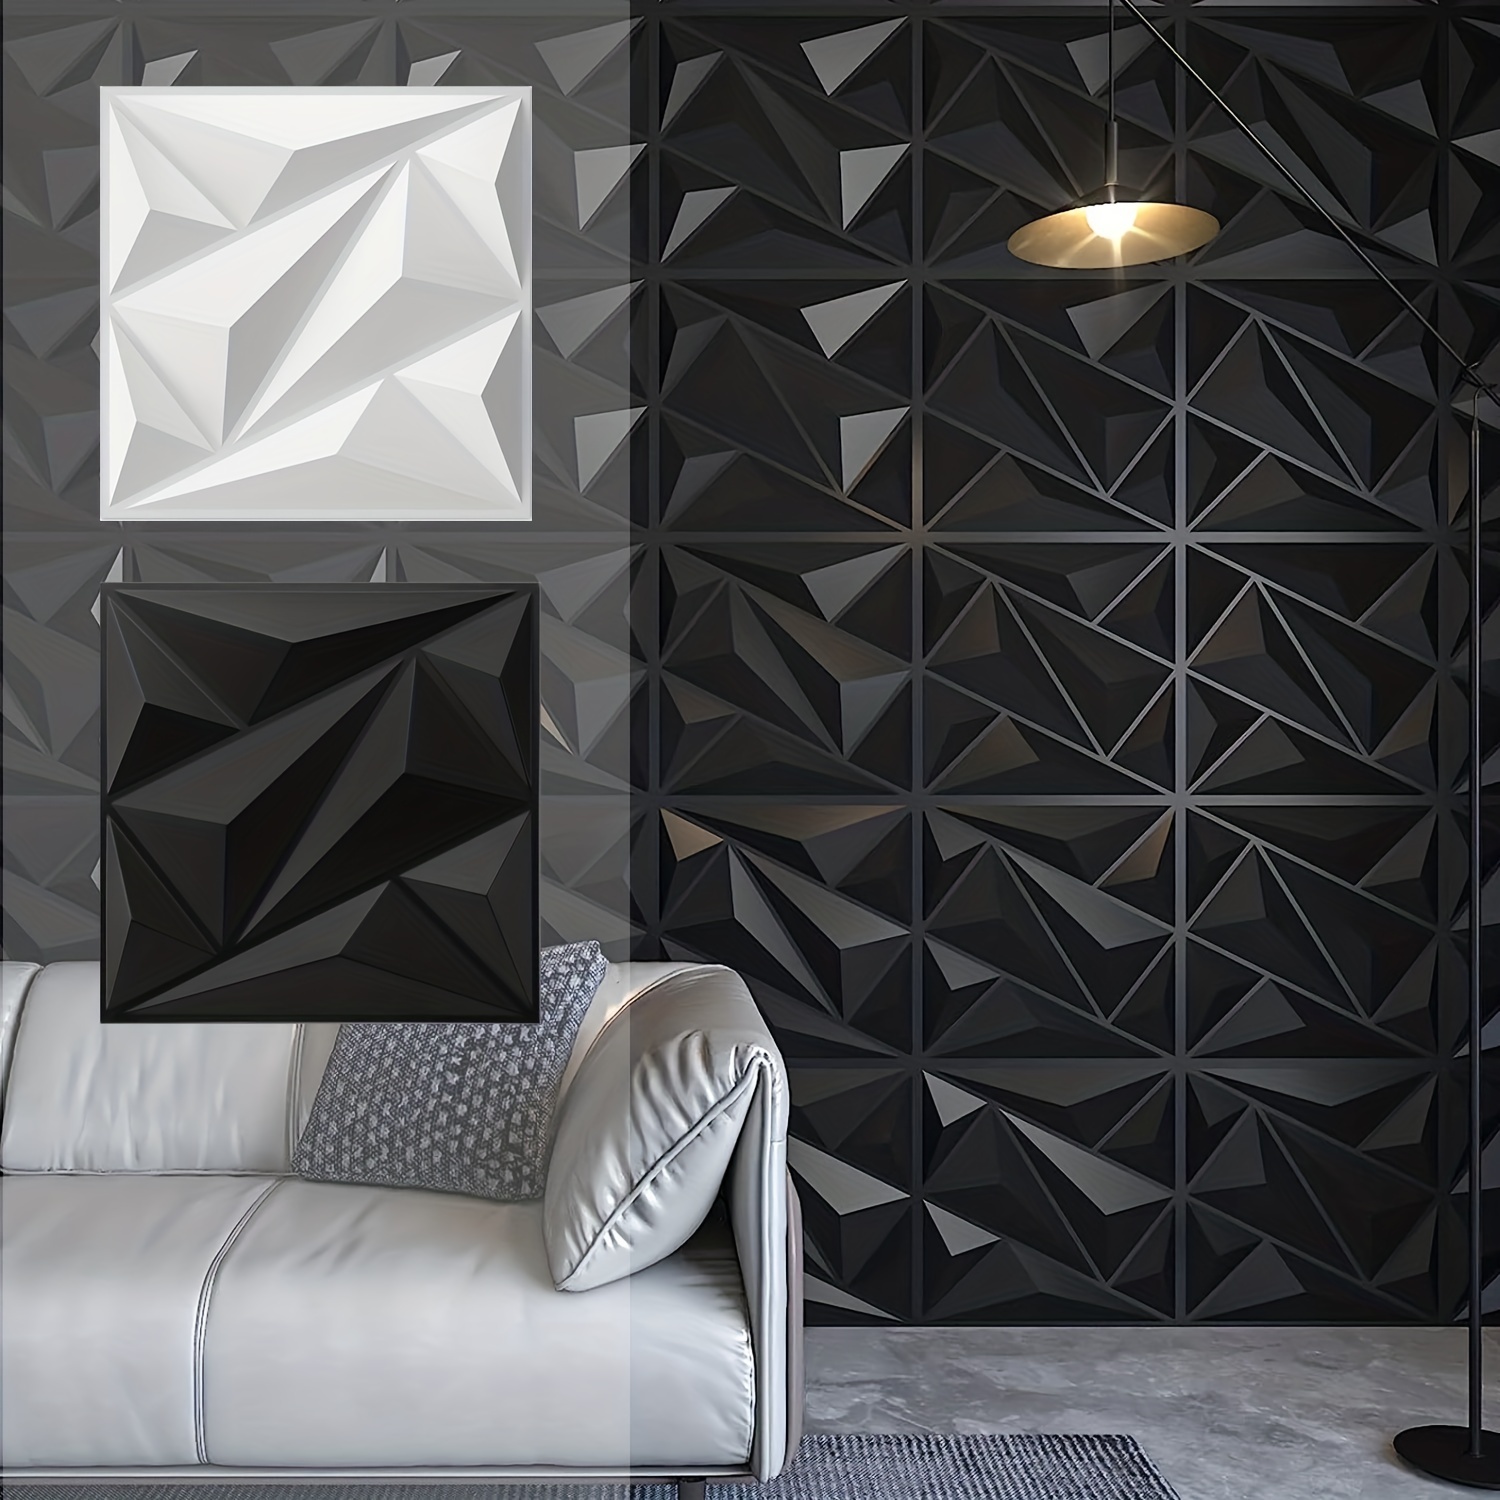  Art3dwallpanels Panel de pared 3D de PVC para decoración de  pared interior, 19.7 x 19.7 pulgadas, paneles de pared 3D de PVC, paneles  de pared con textura 3D, paquete de 12